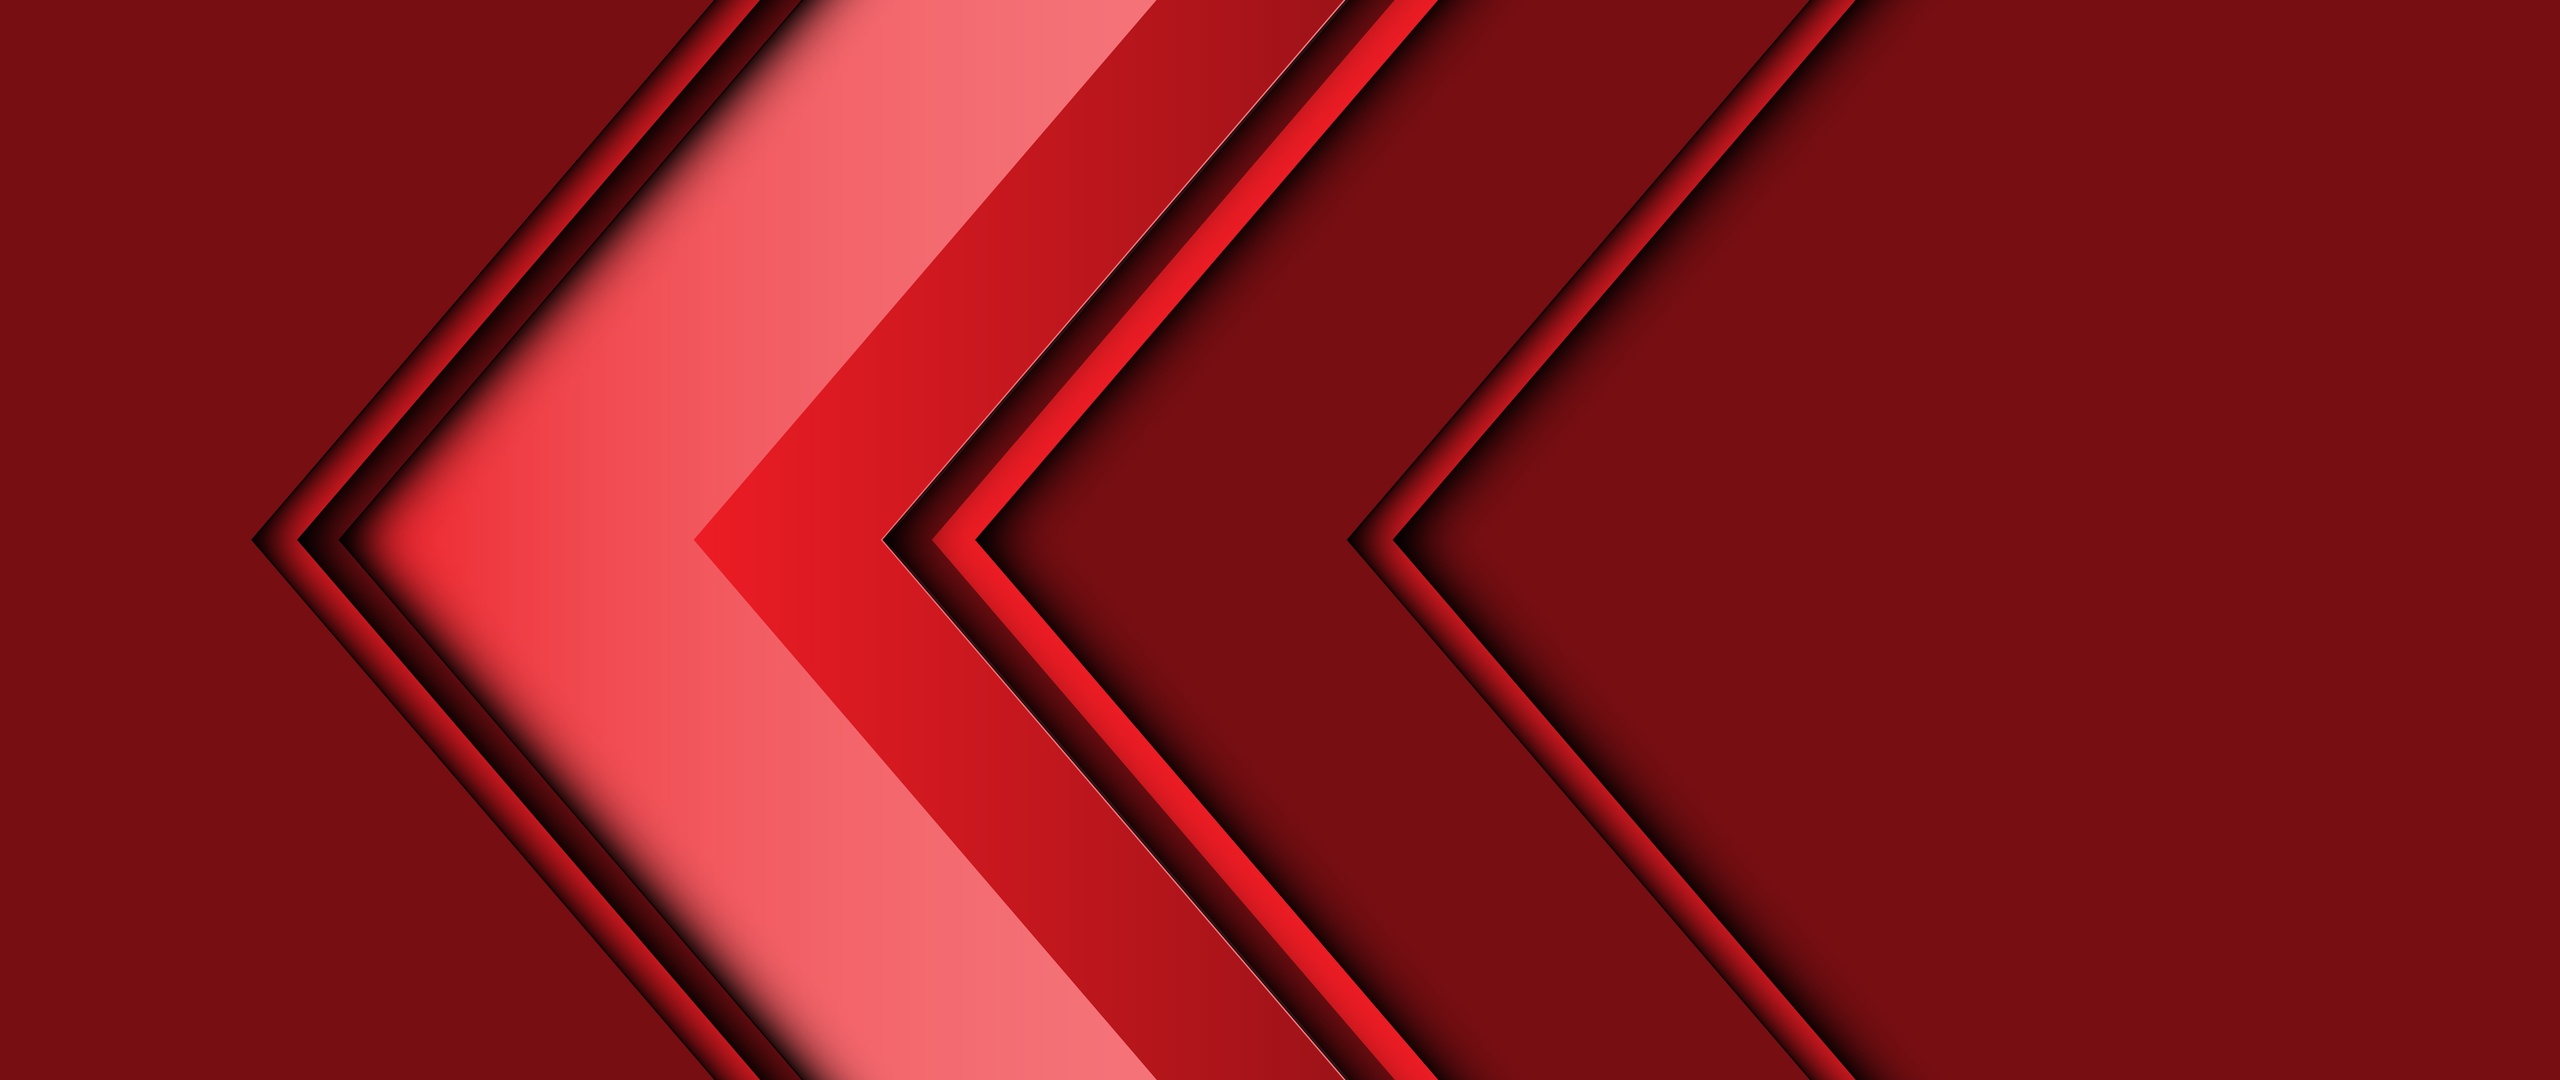 abstract-arrow-3d-red-5k-v7-2560x1080.jpg